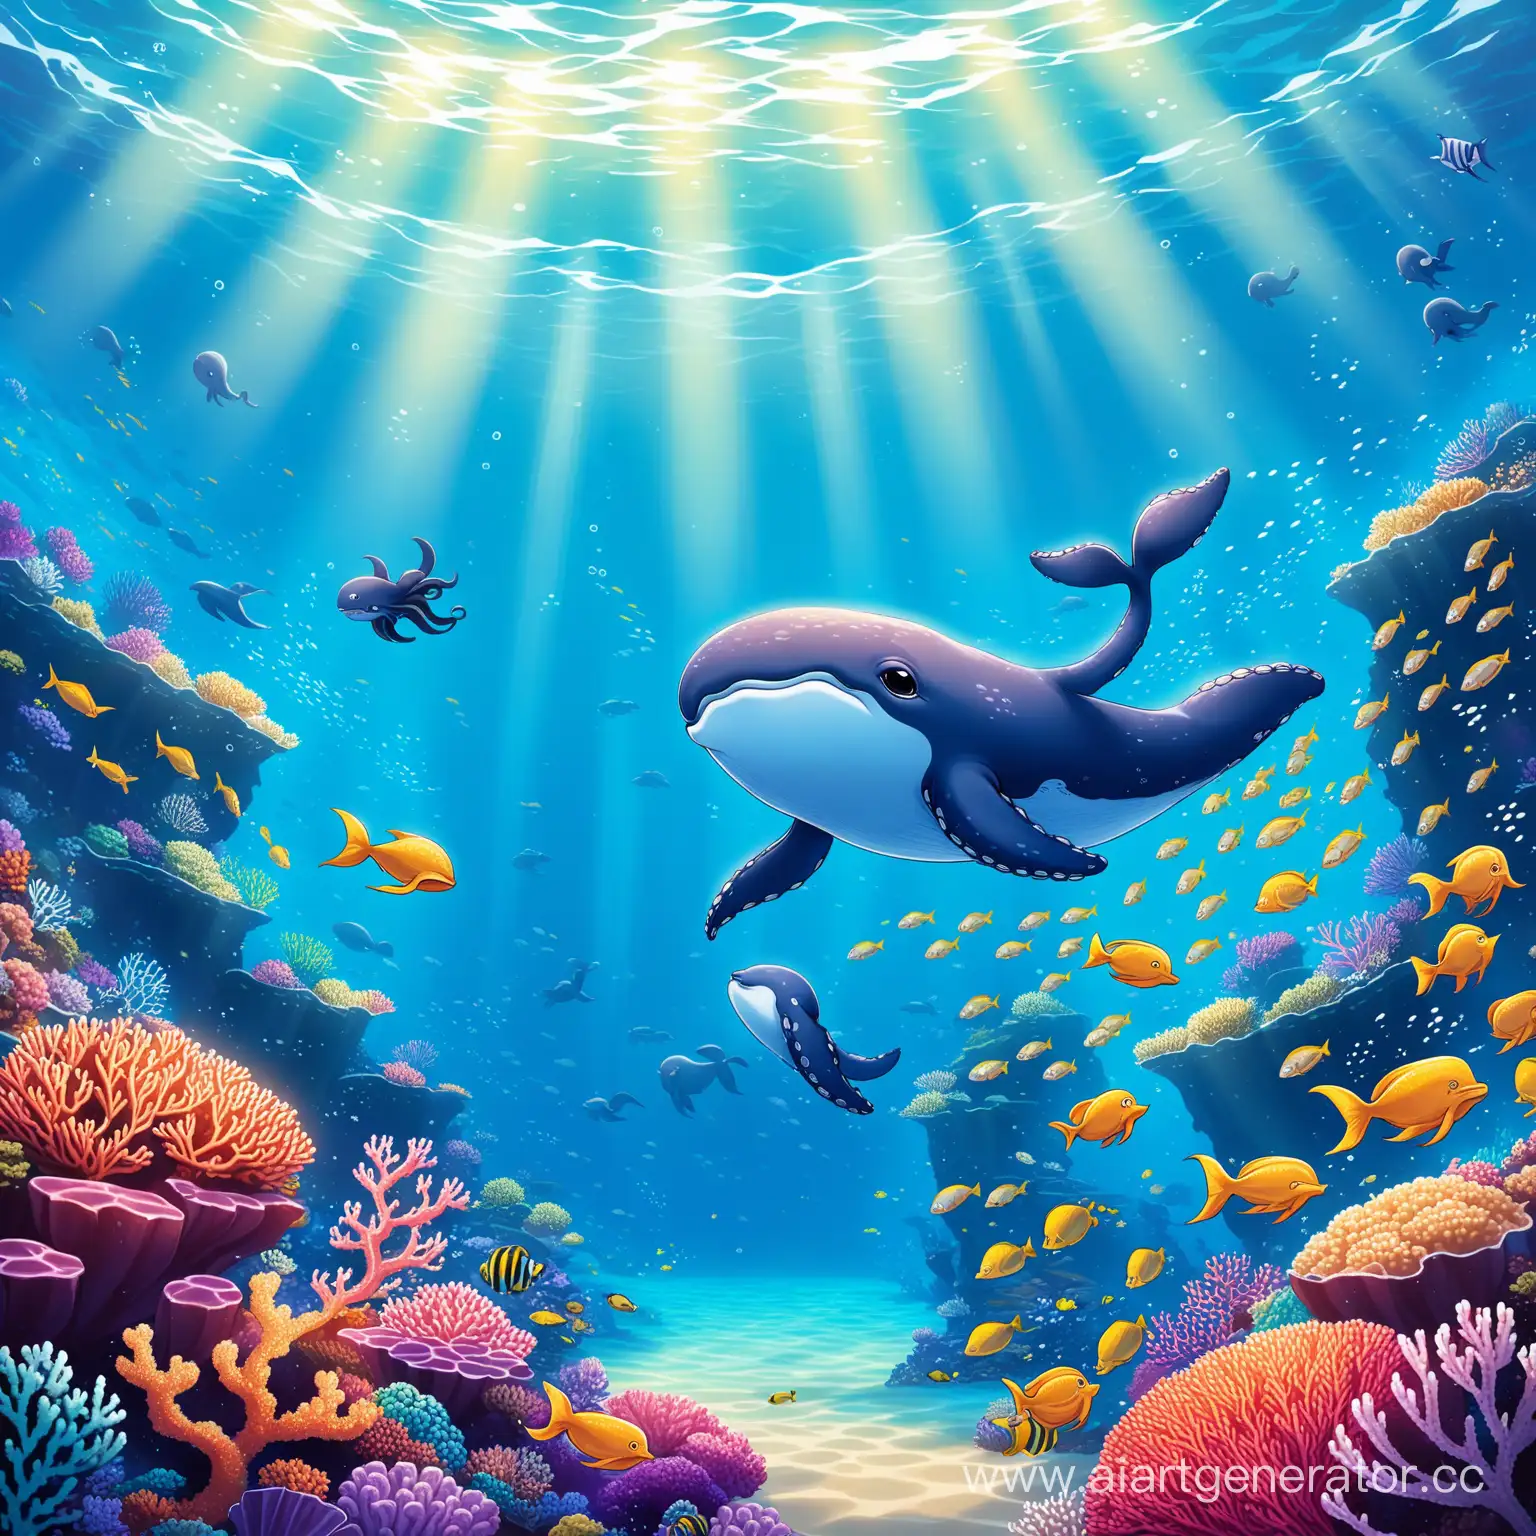 Маленький кит разговаривает с осьминогом в большом океане под водой рядом с корраловым рифом, а вокруг плавают рыбы